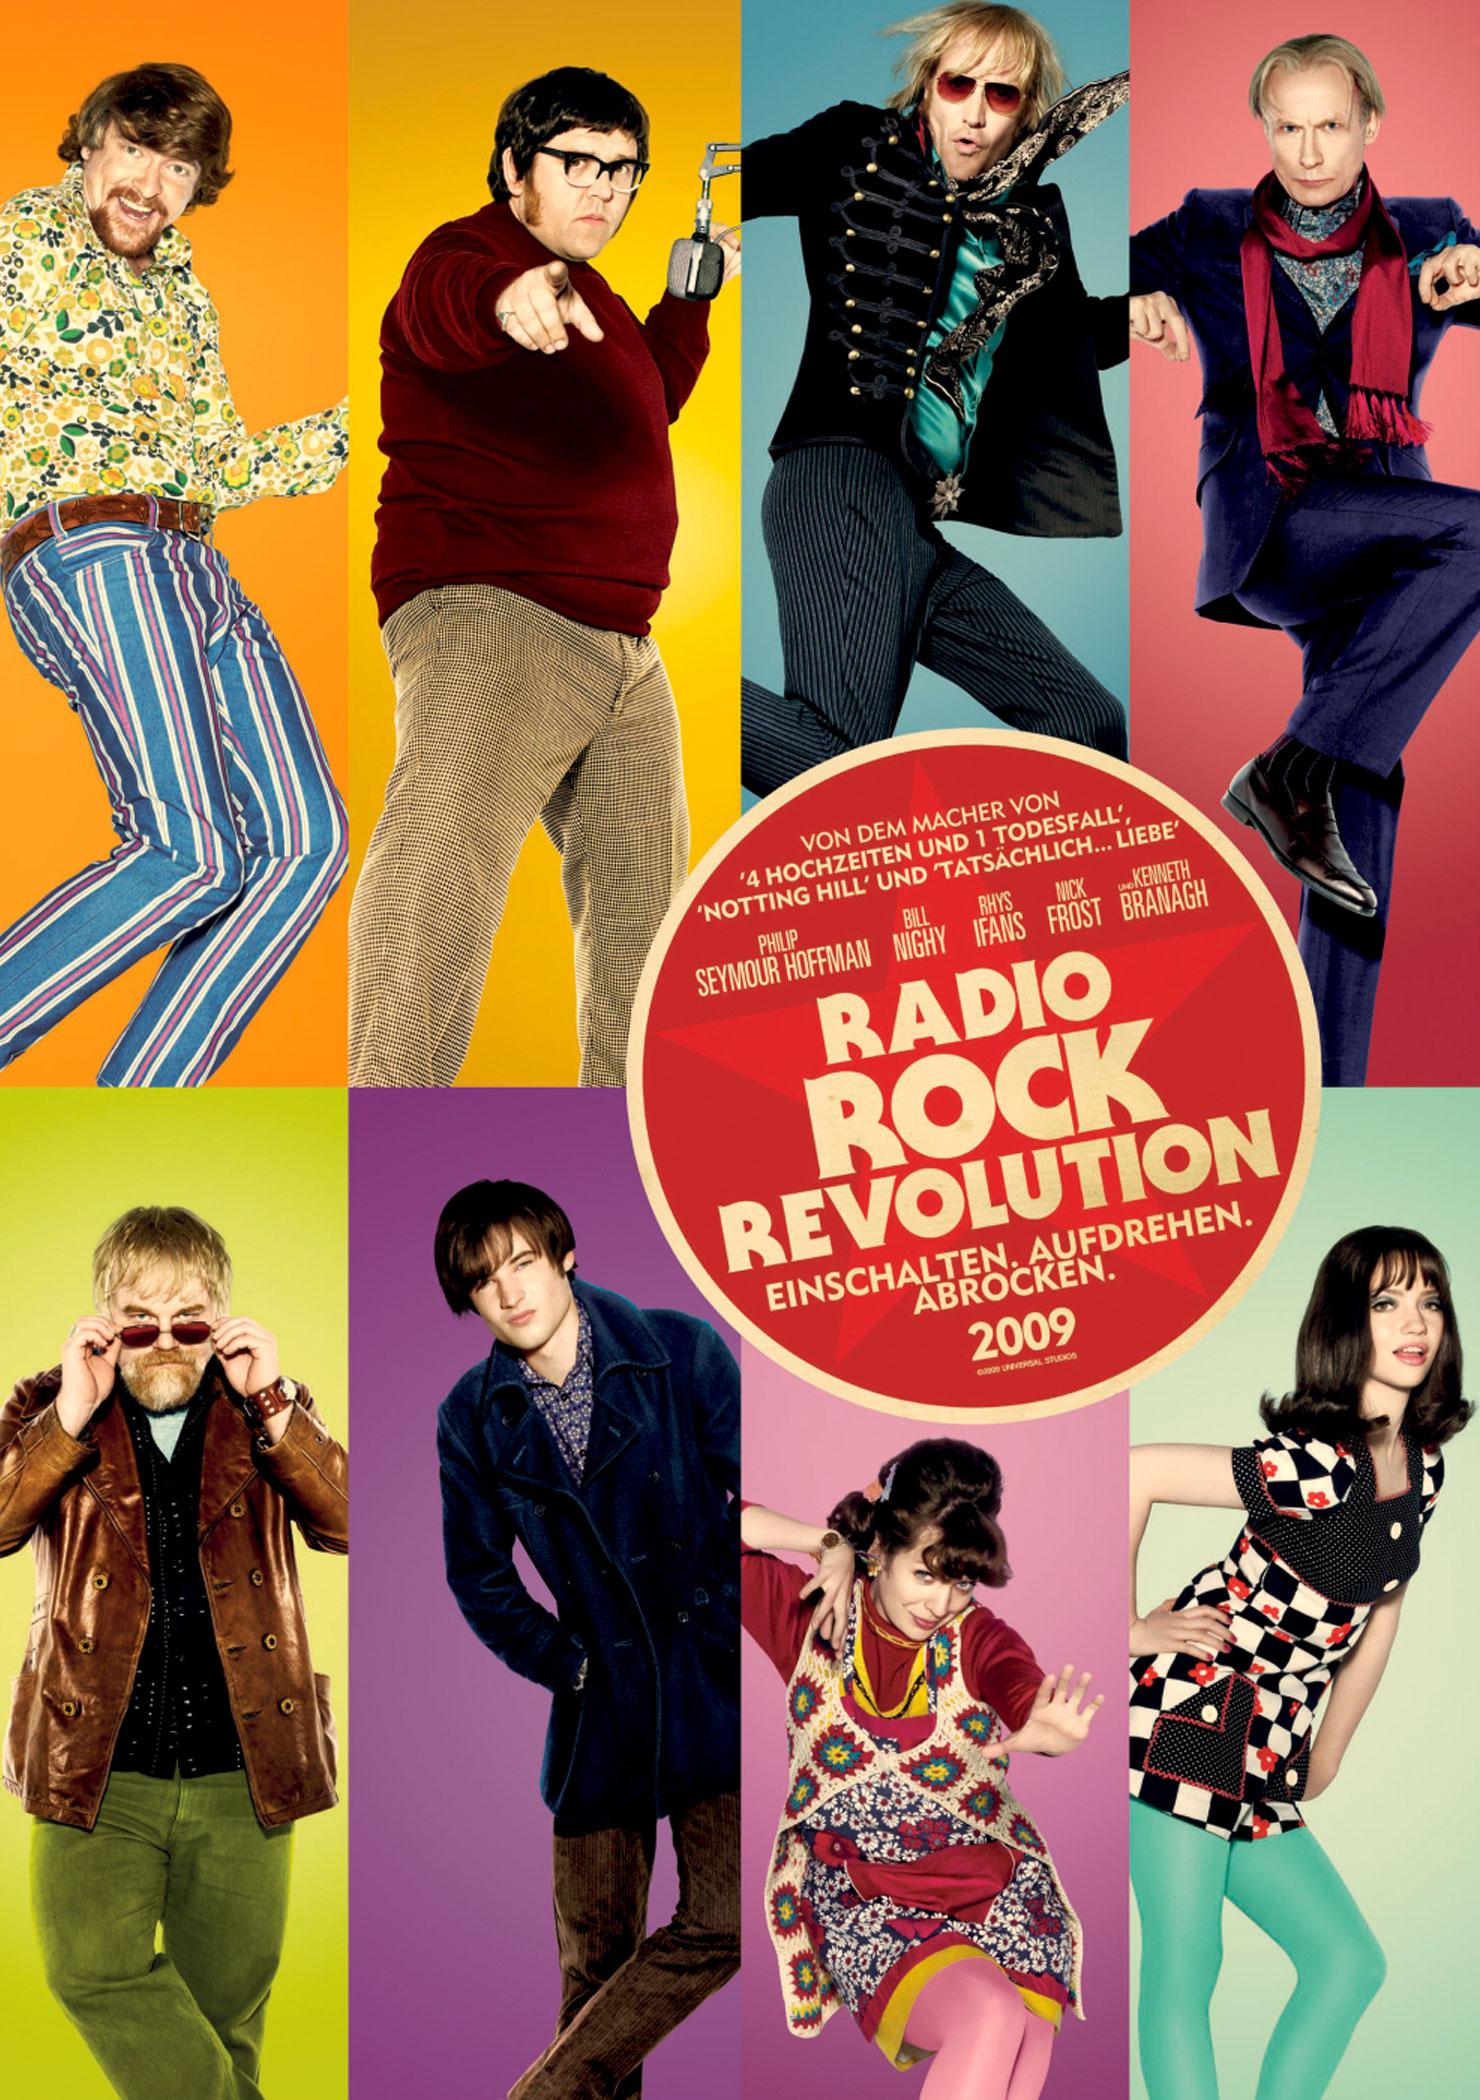 radio-rock-revolution-2009-im-kino-trailer-kritik-vorstellungen